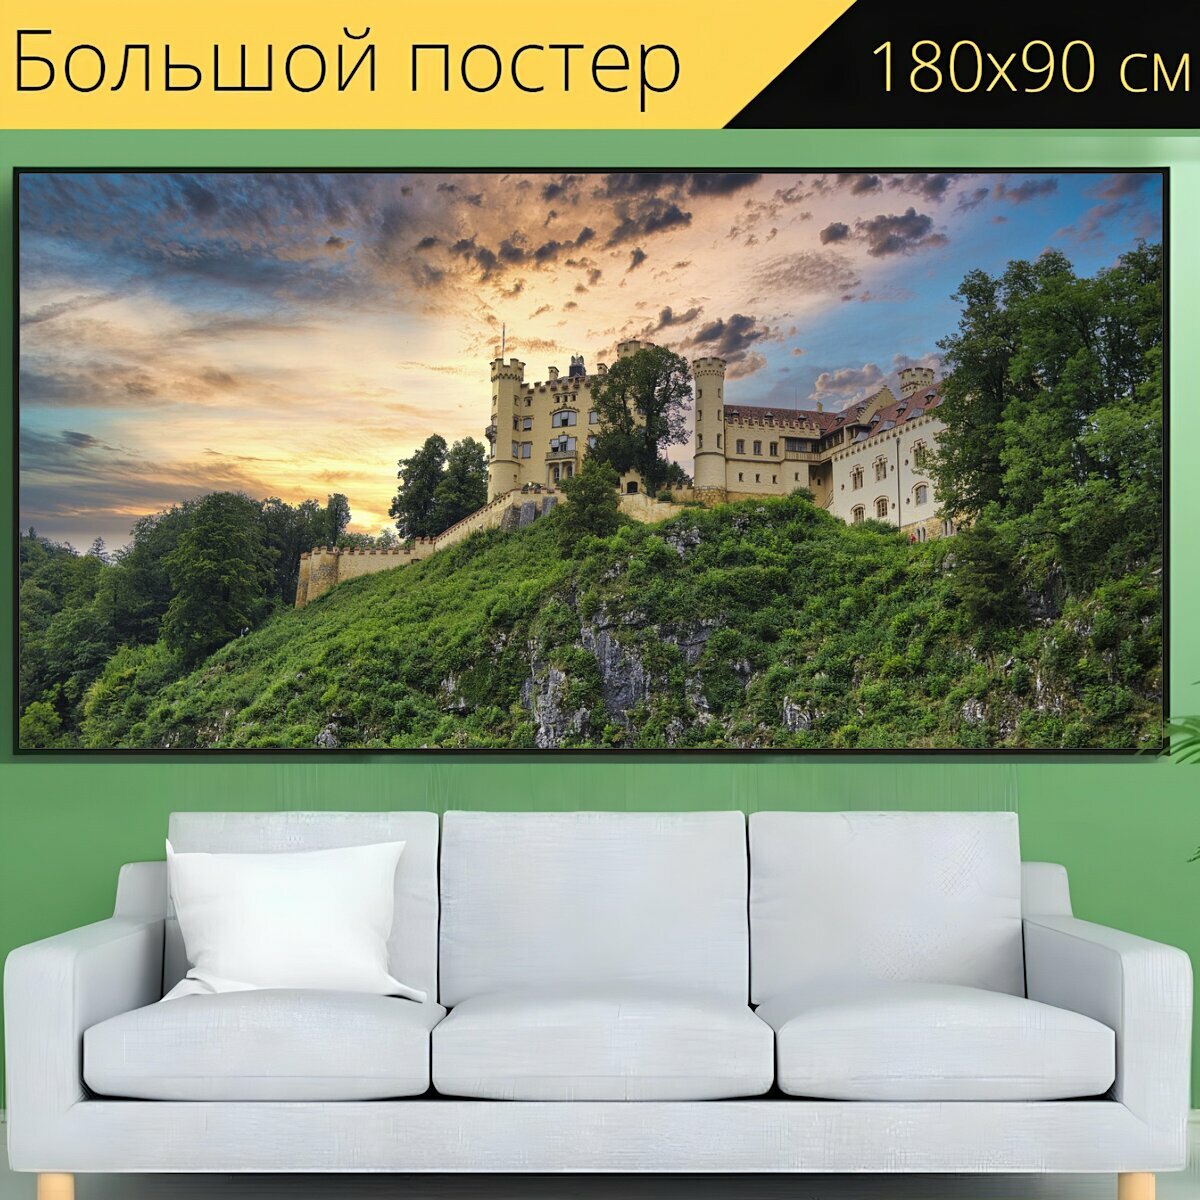 Большой постер "Замок, хоэншвангау, холм" 180 x 90 см. для интерьера